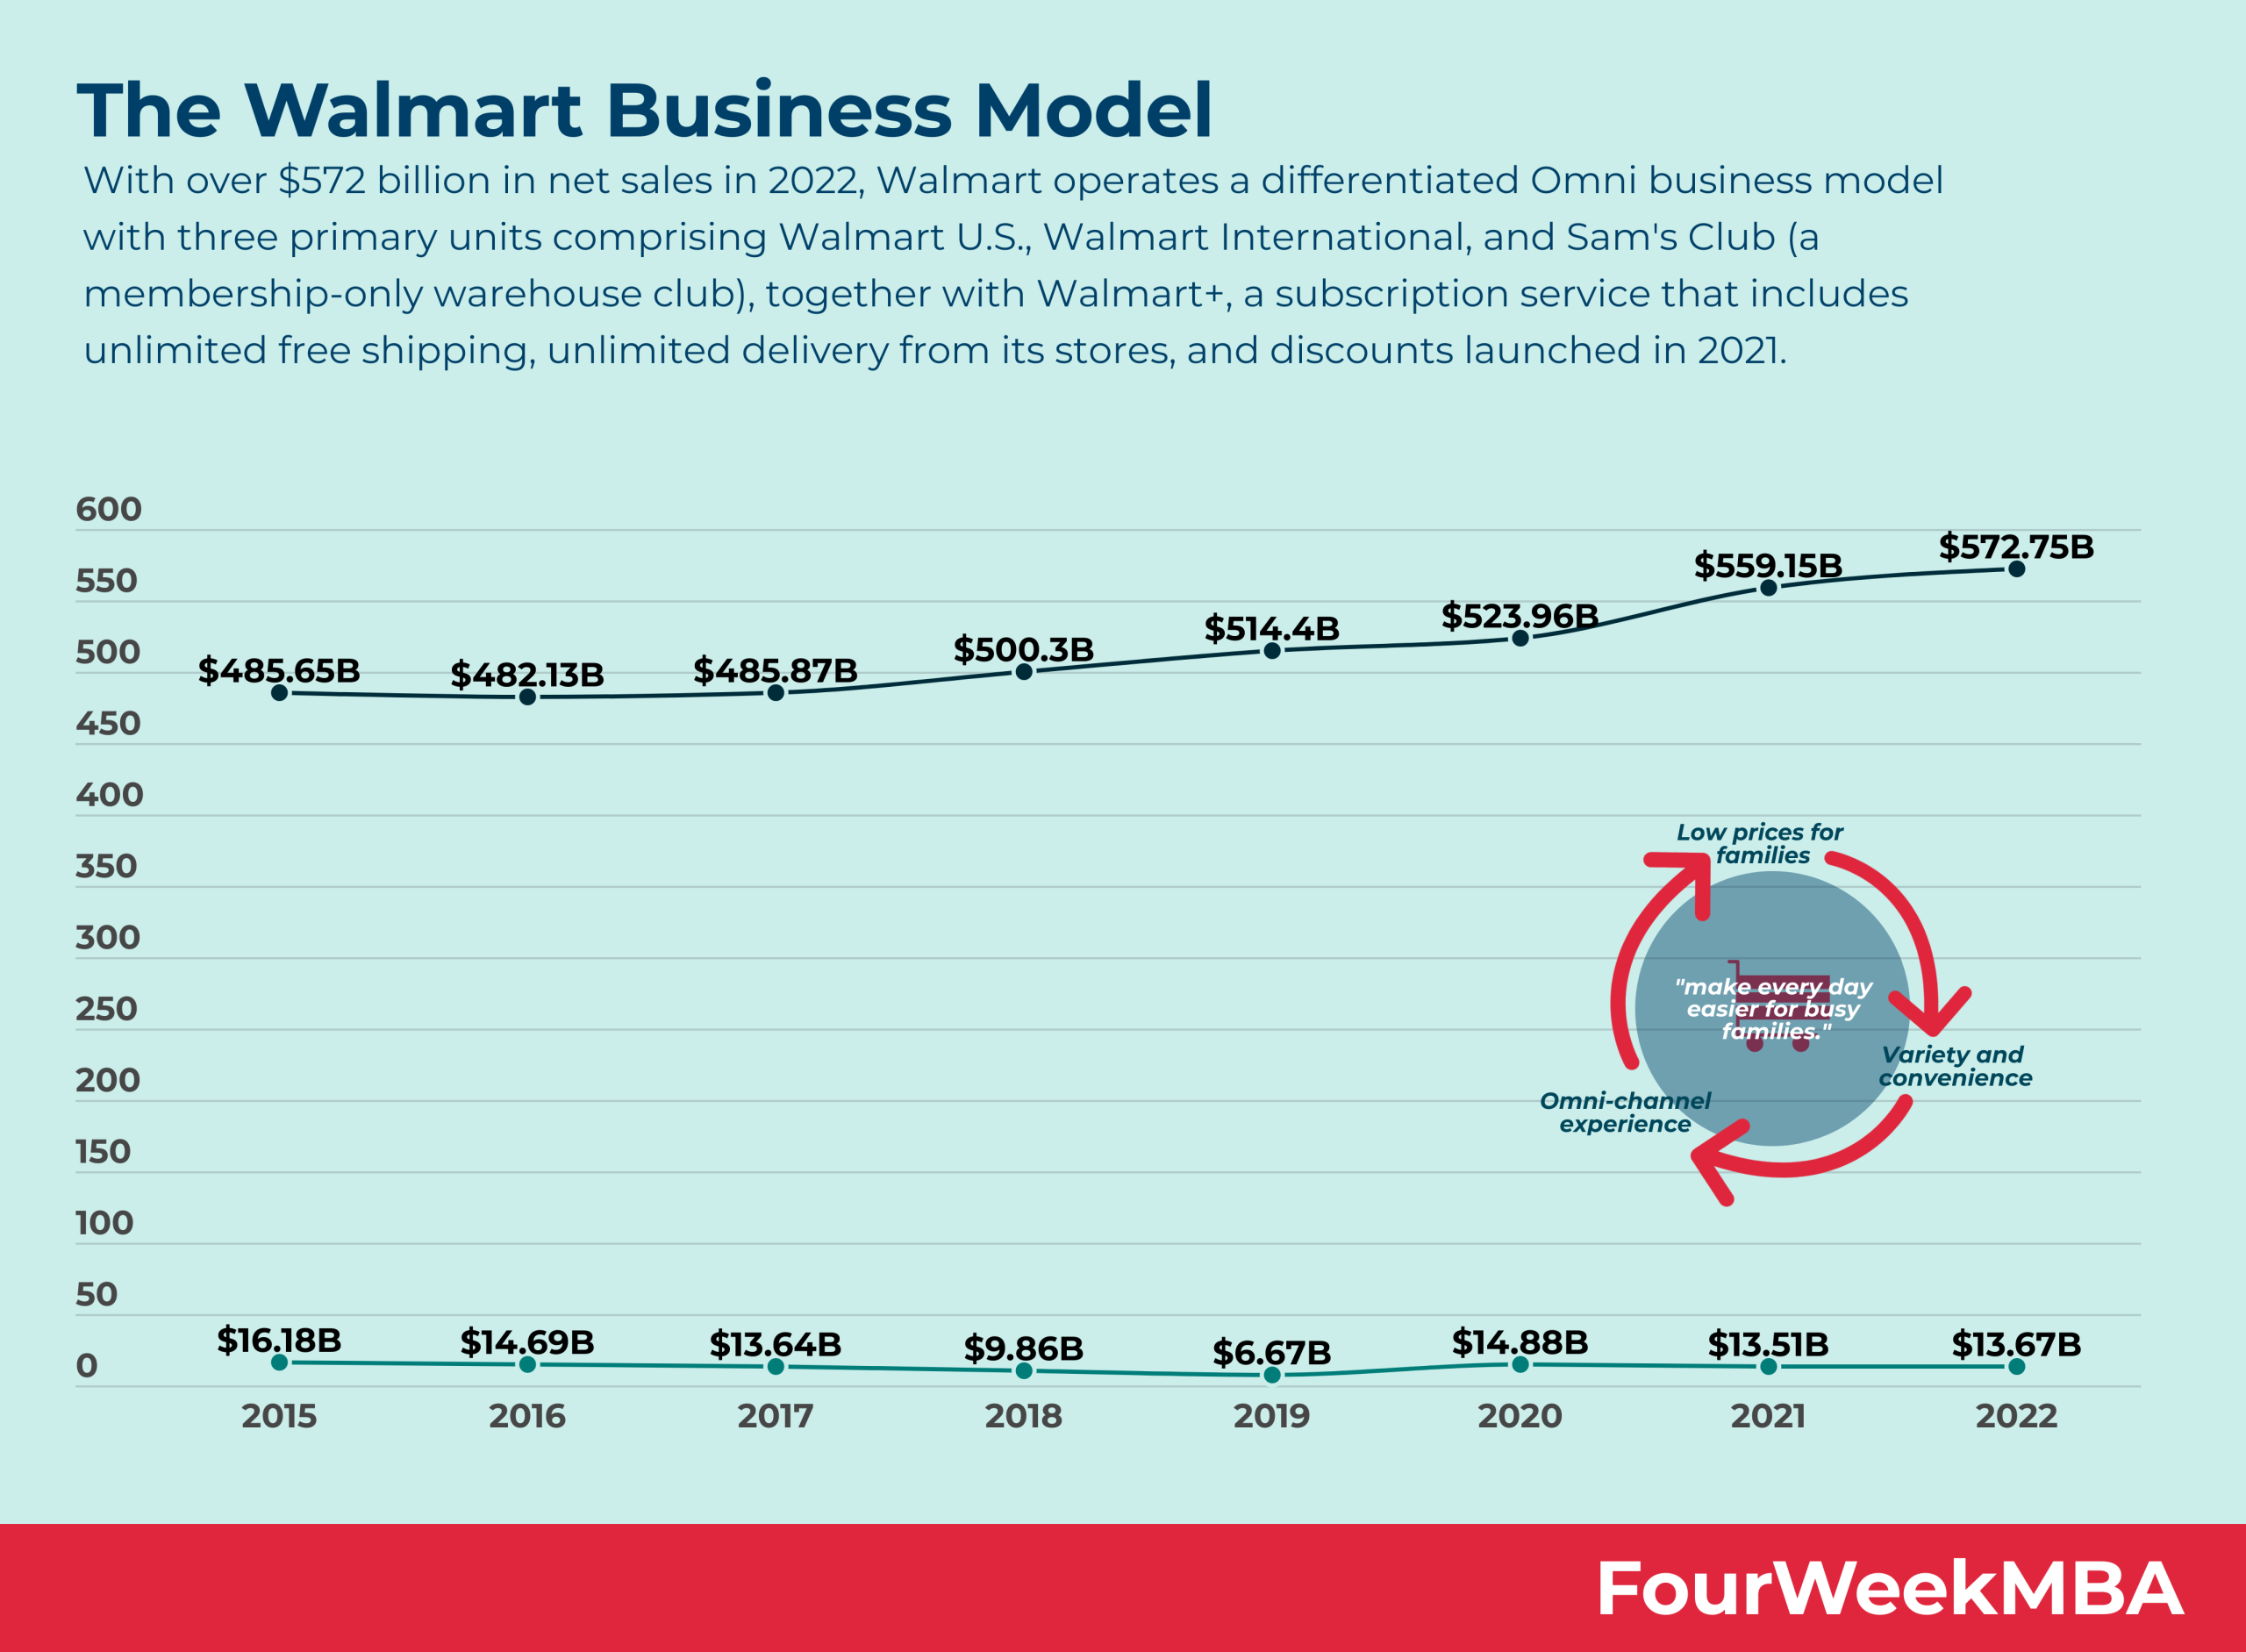 El análisis del modelo de negocio de Walmart - FourWeekMBA